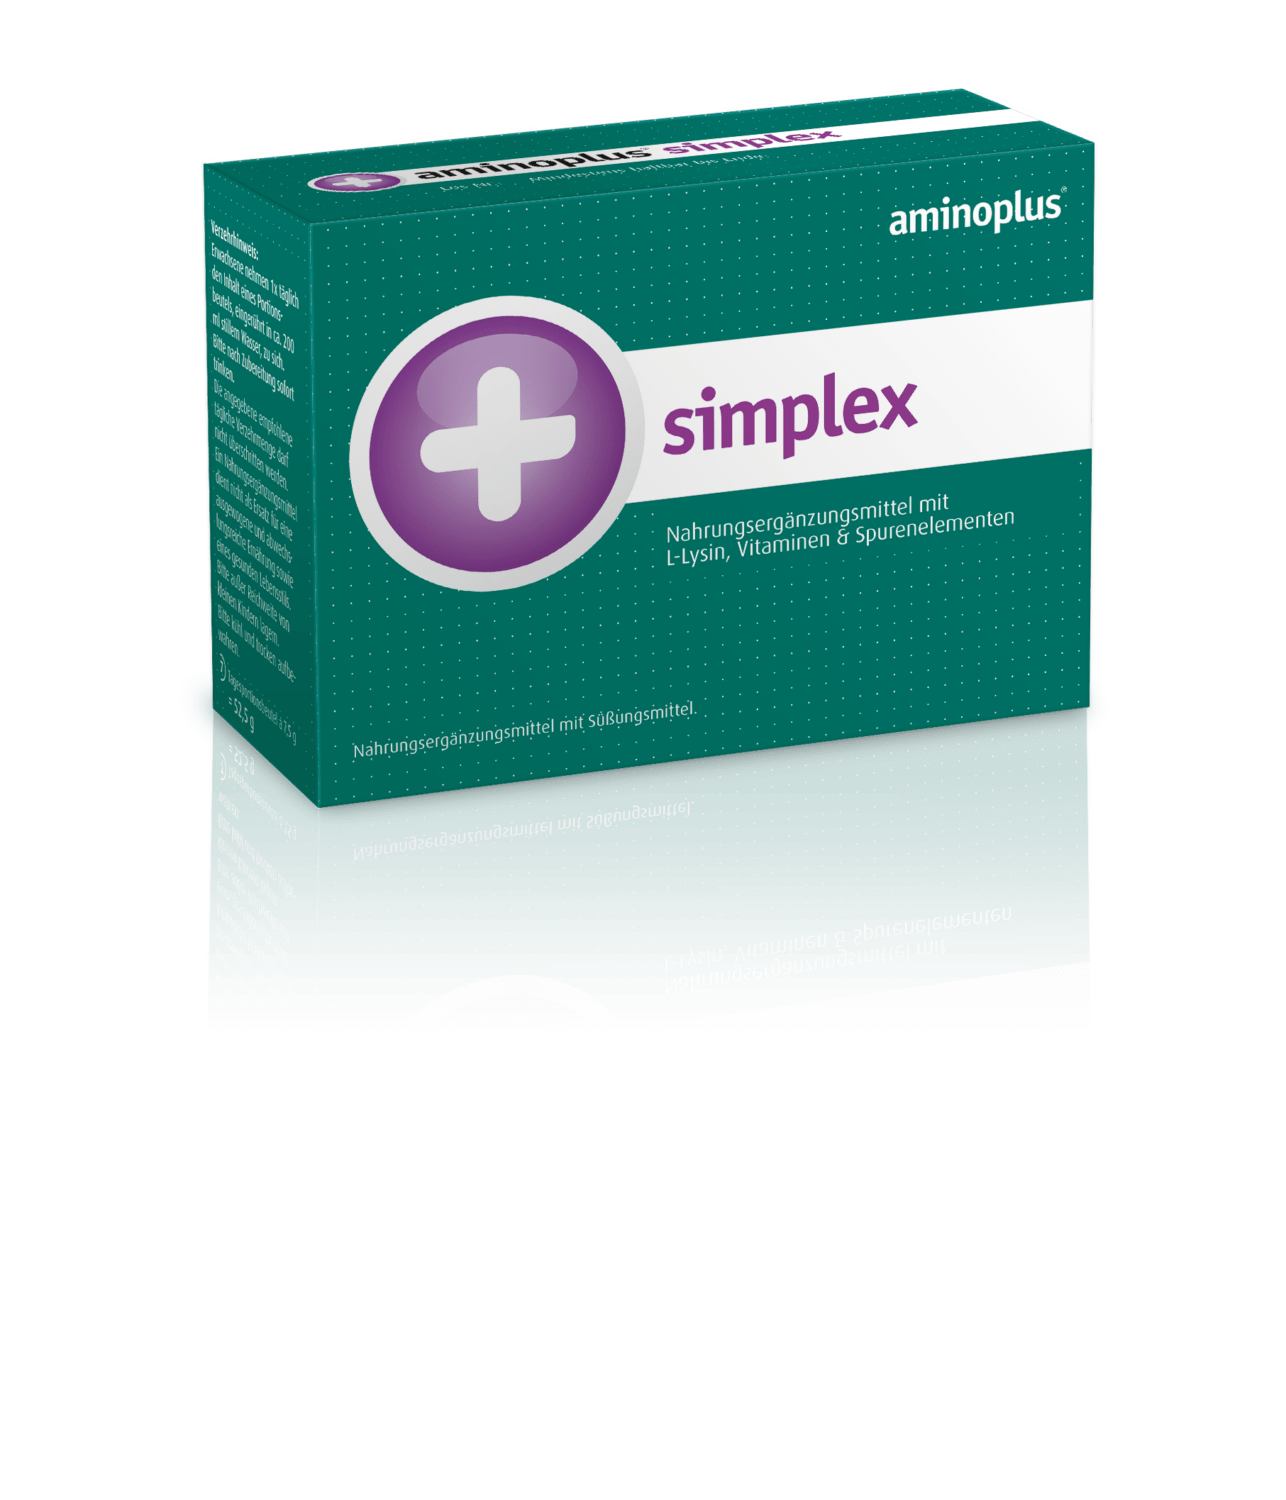 Aminoplus simplex granulat za pripravo napitka, 7 vrečk po 7,5 g